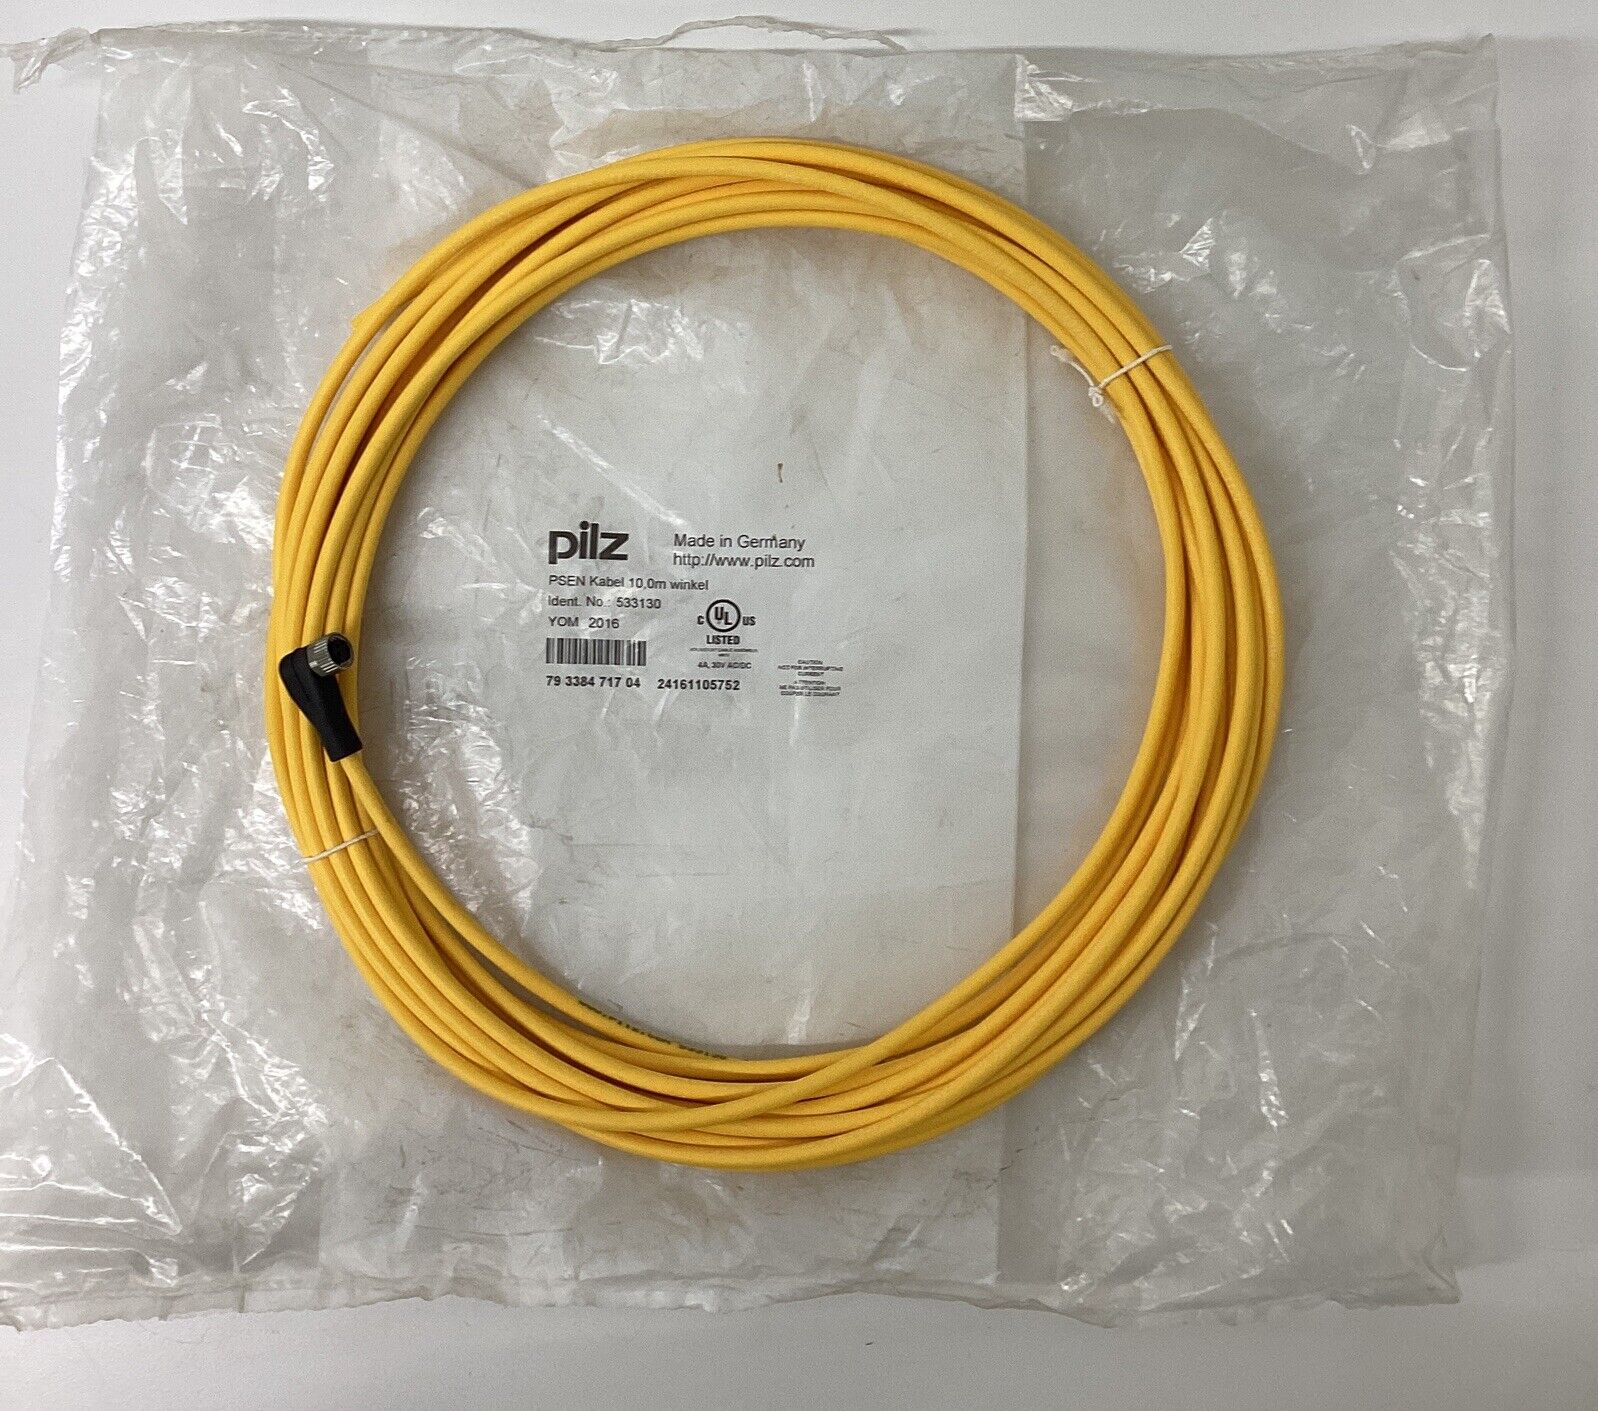 Pilz 533130 M8 90 Degree Single End Sensor Cable 10 Meter (CBL152)